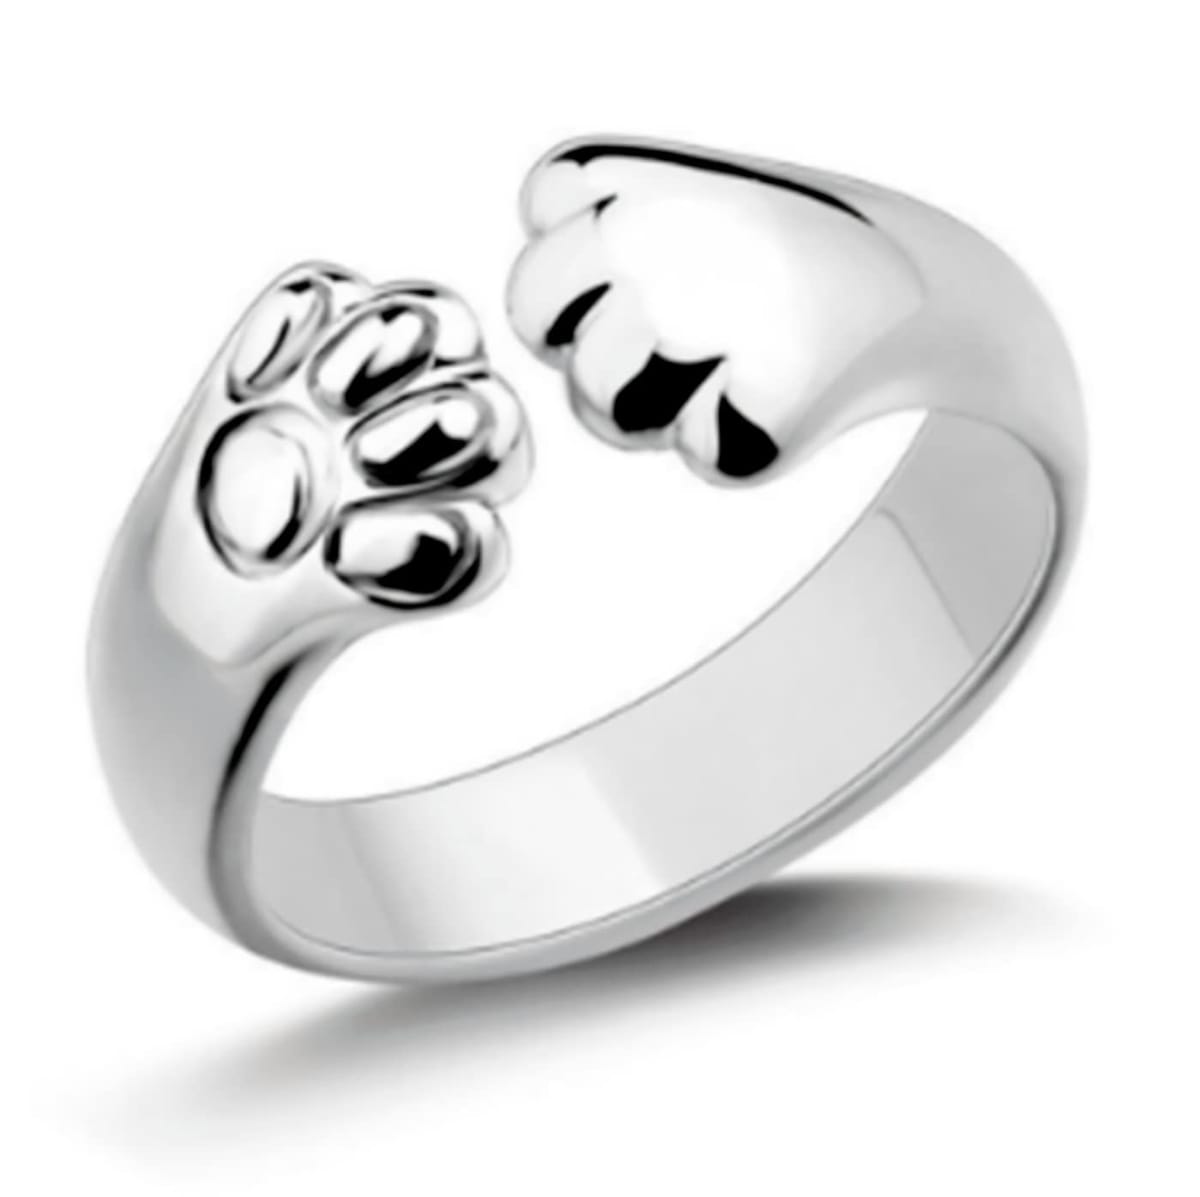 [ドナリー] シルバー リング 指輪 シンプル 猫グッズ 犬 肉球 ファッション アクセサリー フリーサイズ レディース